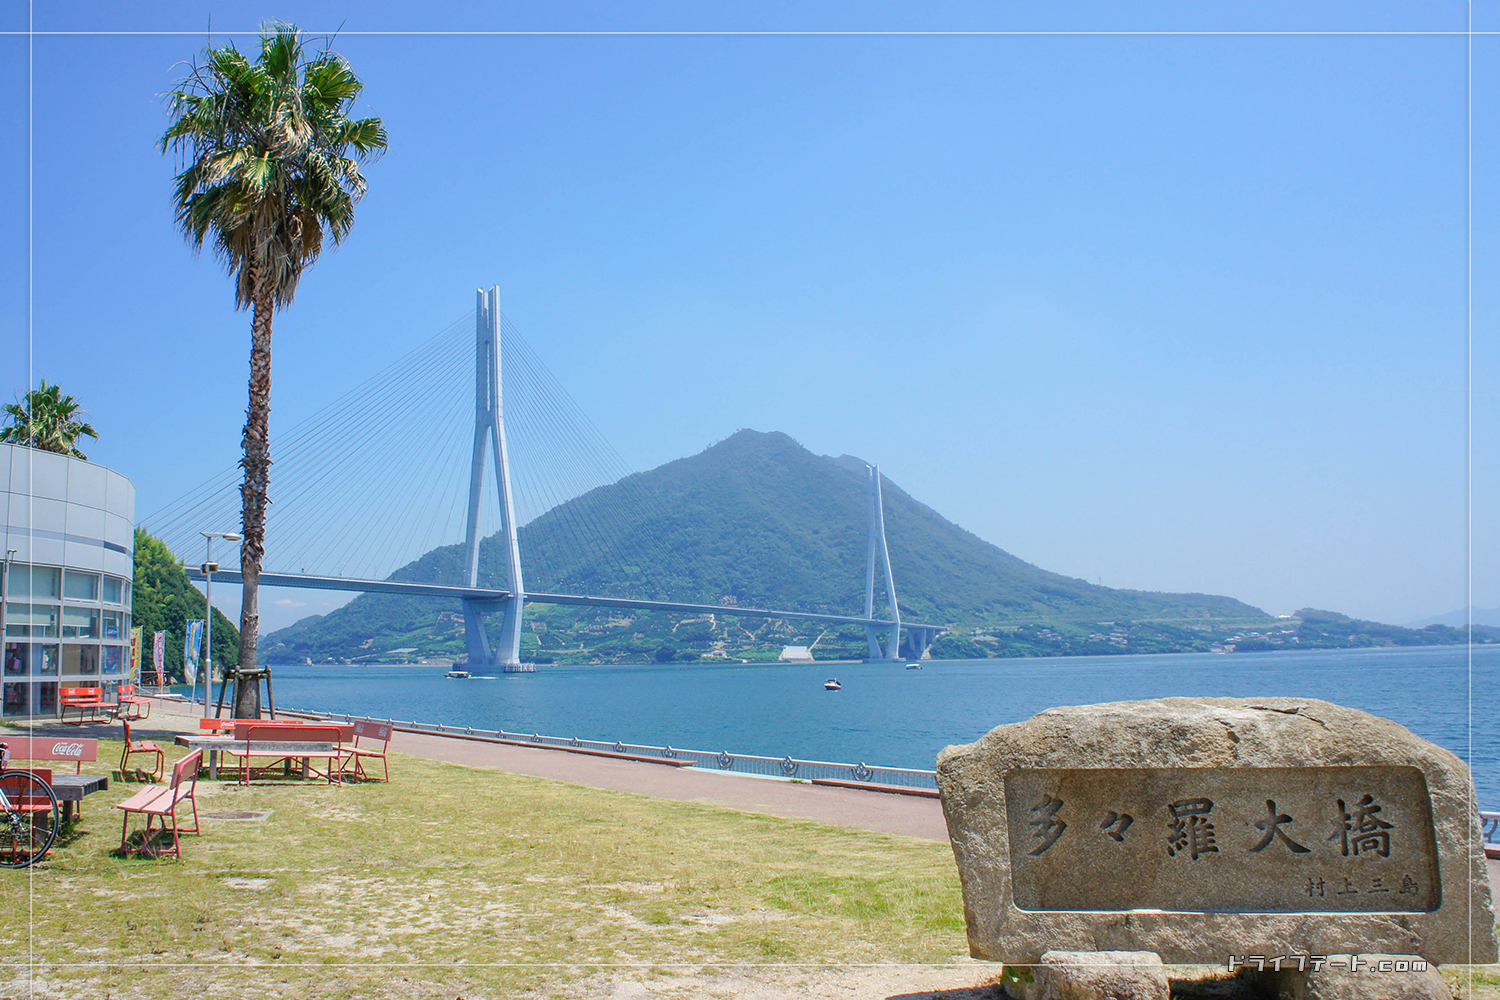 多々羅大橋と書かれた石碑とともに見えてくる多々羅大橋と、海を挟んで見える生口島